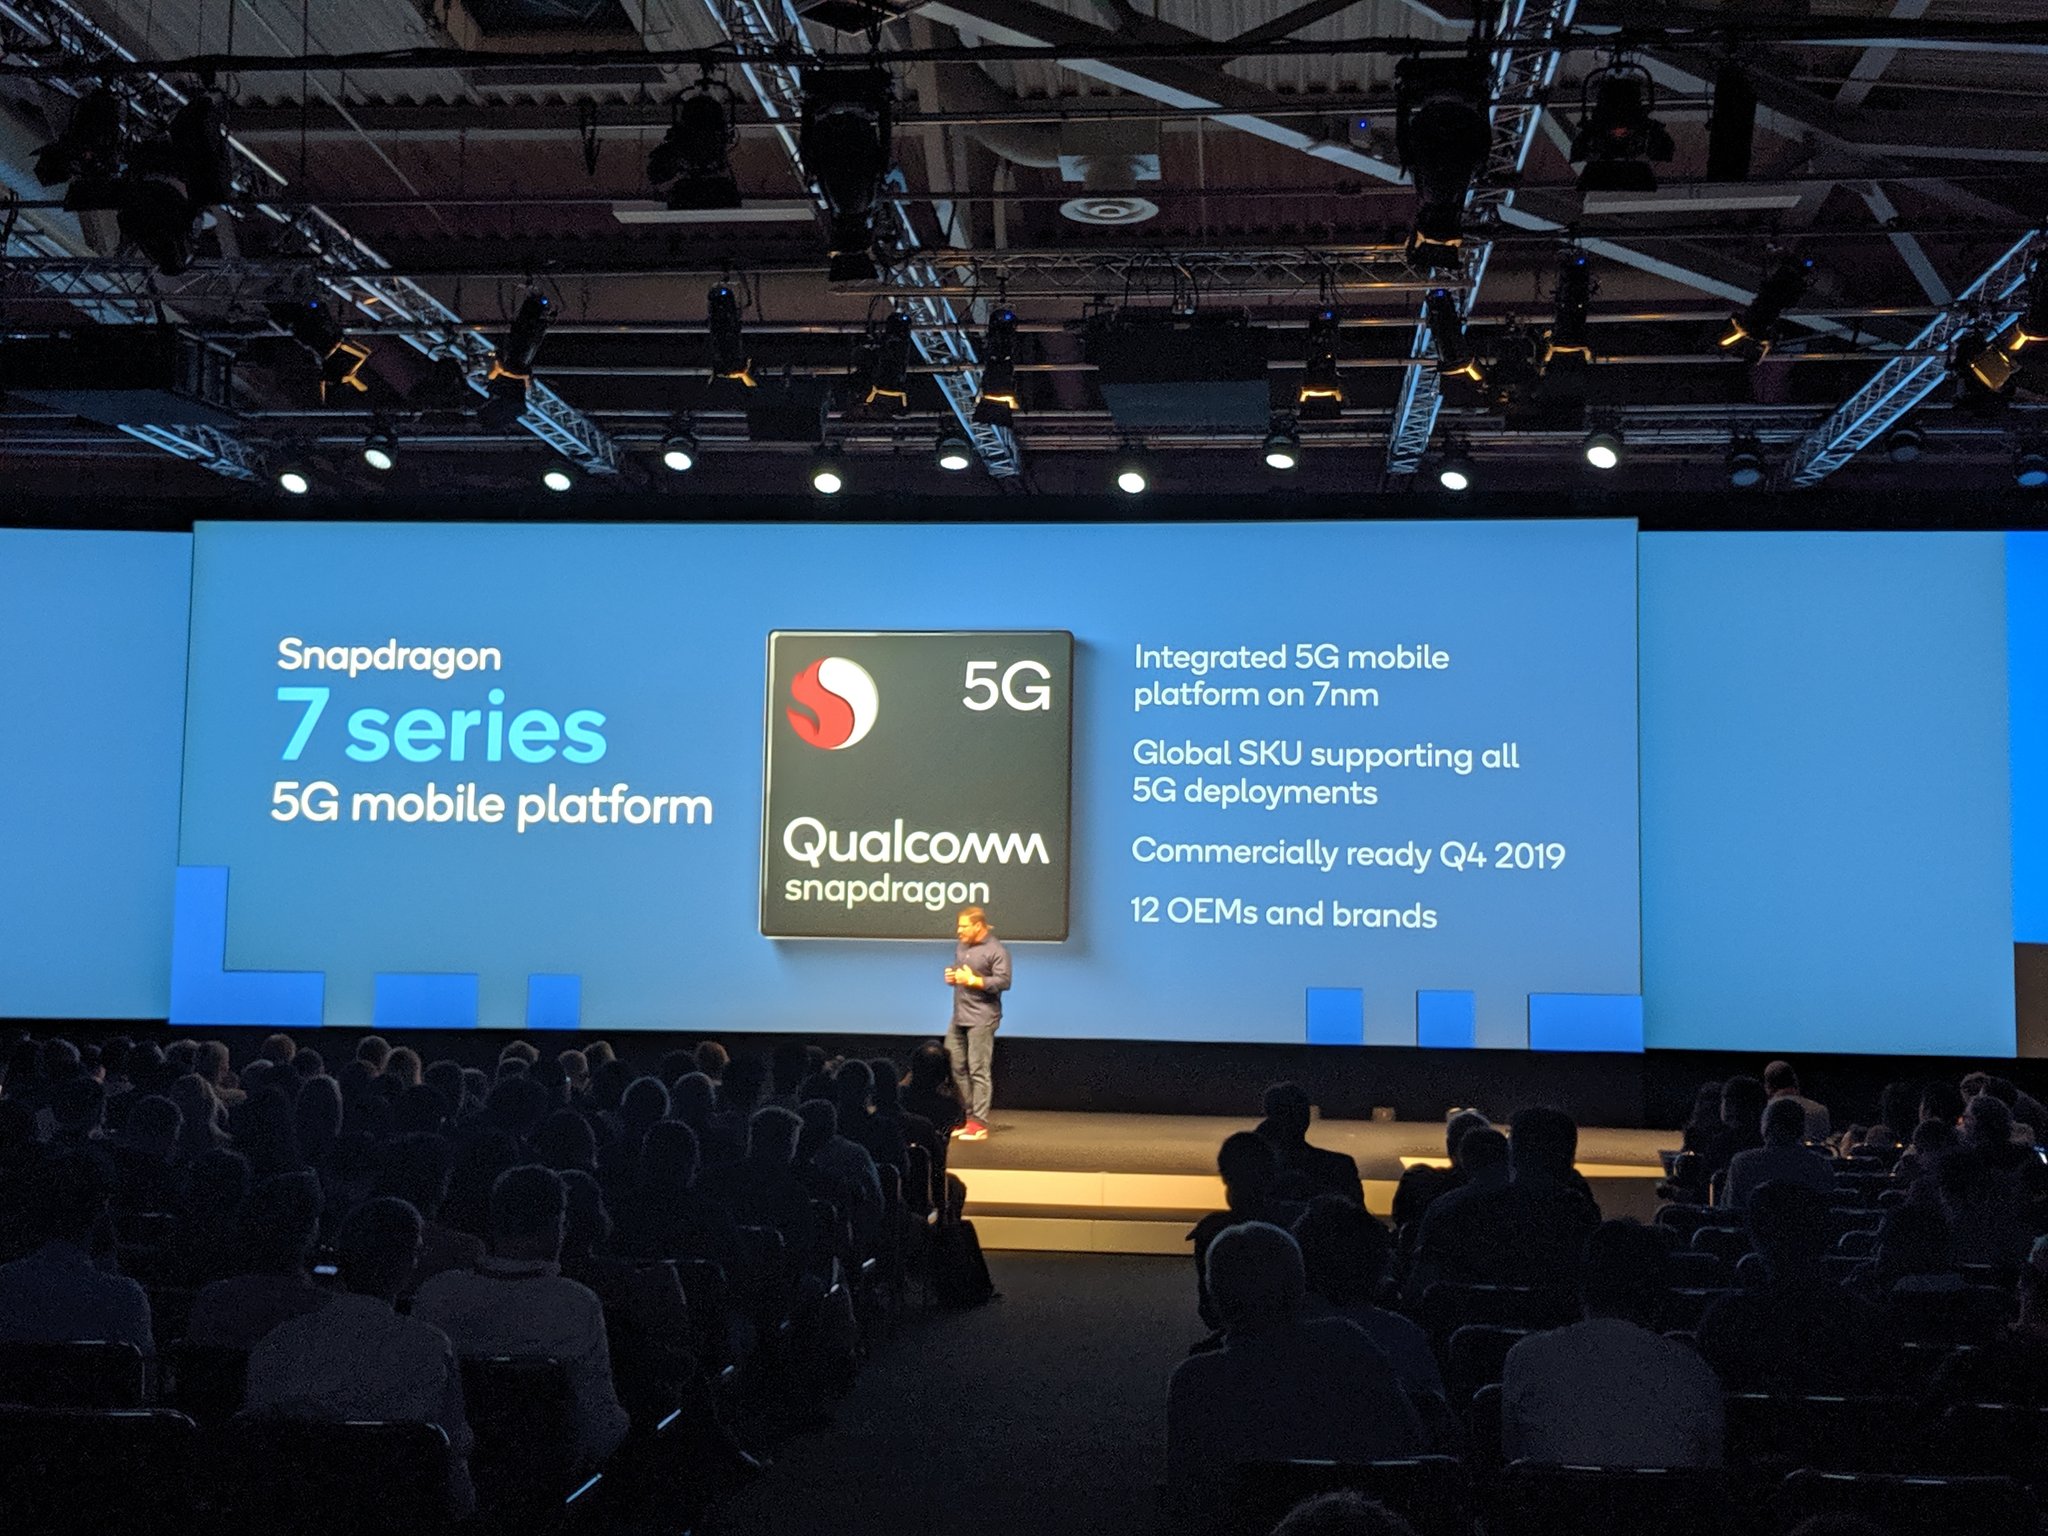 تقوم كوالكوم بإعداد معالجات Snapdragon 6xx و 7xx مع تقنية 5G المدمجة